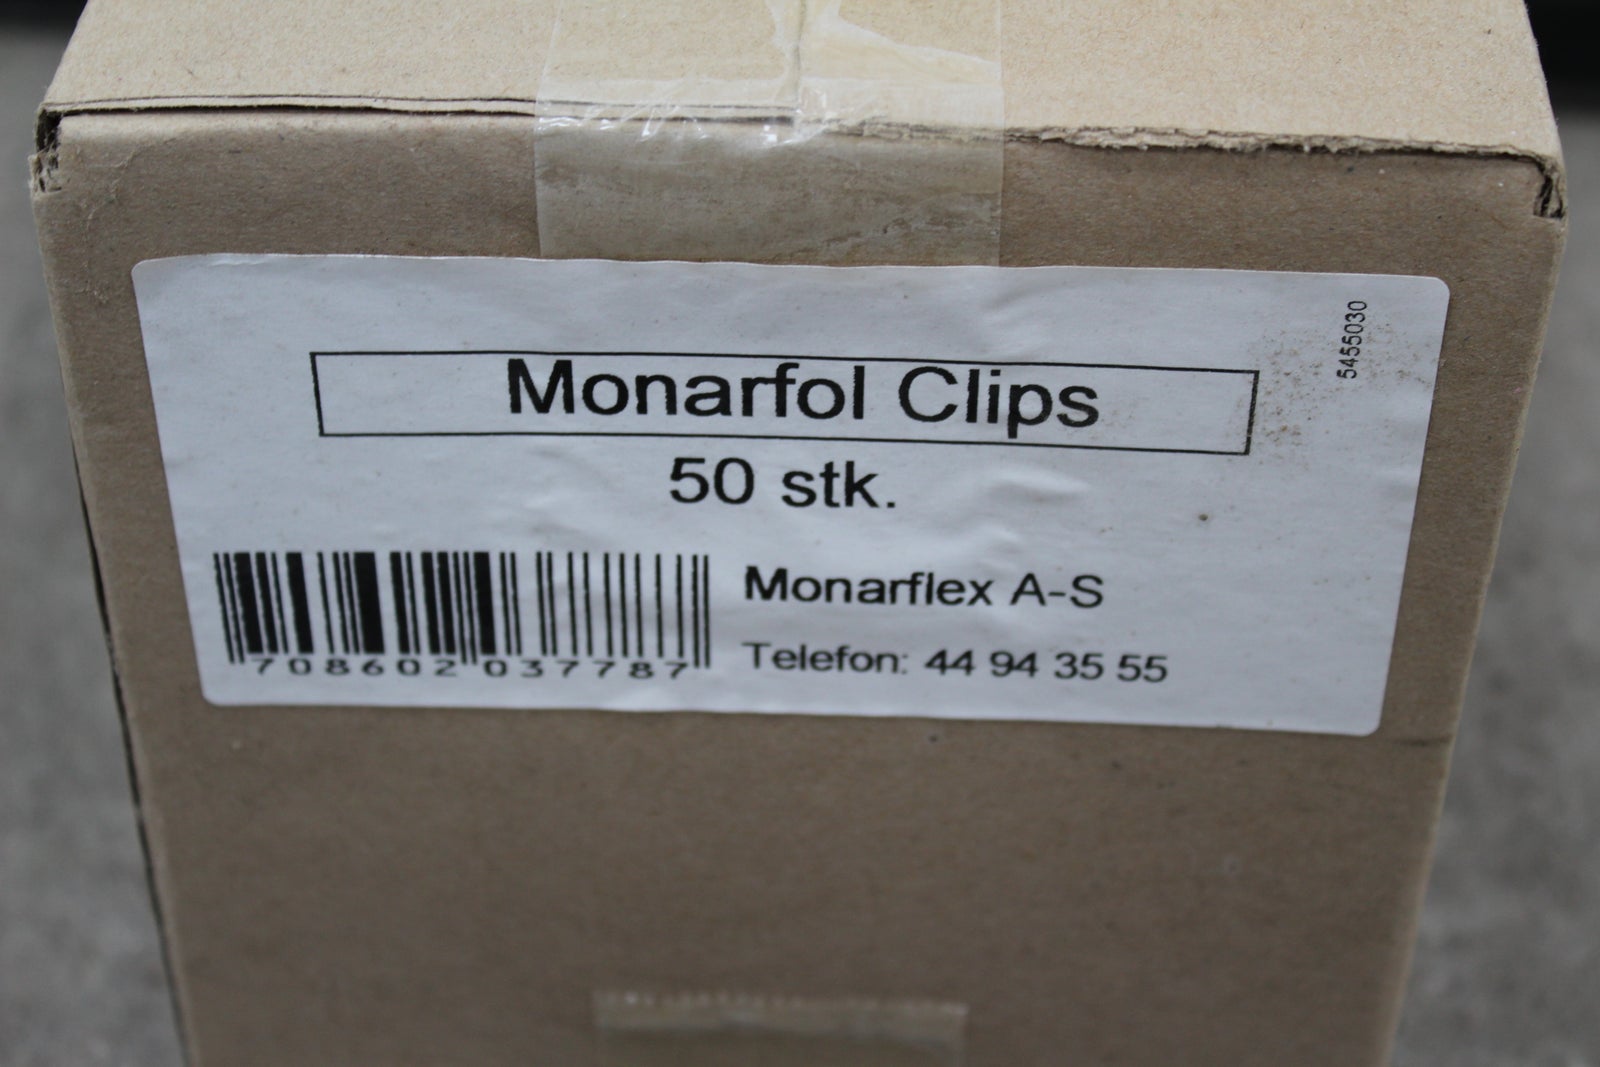 Monarfol Clips 50 stk